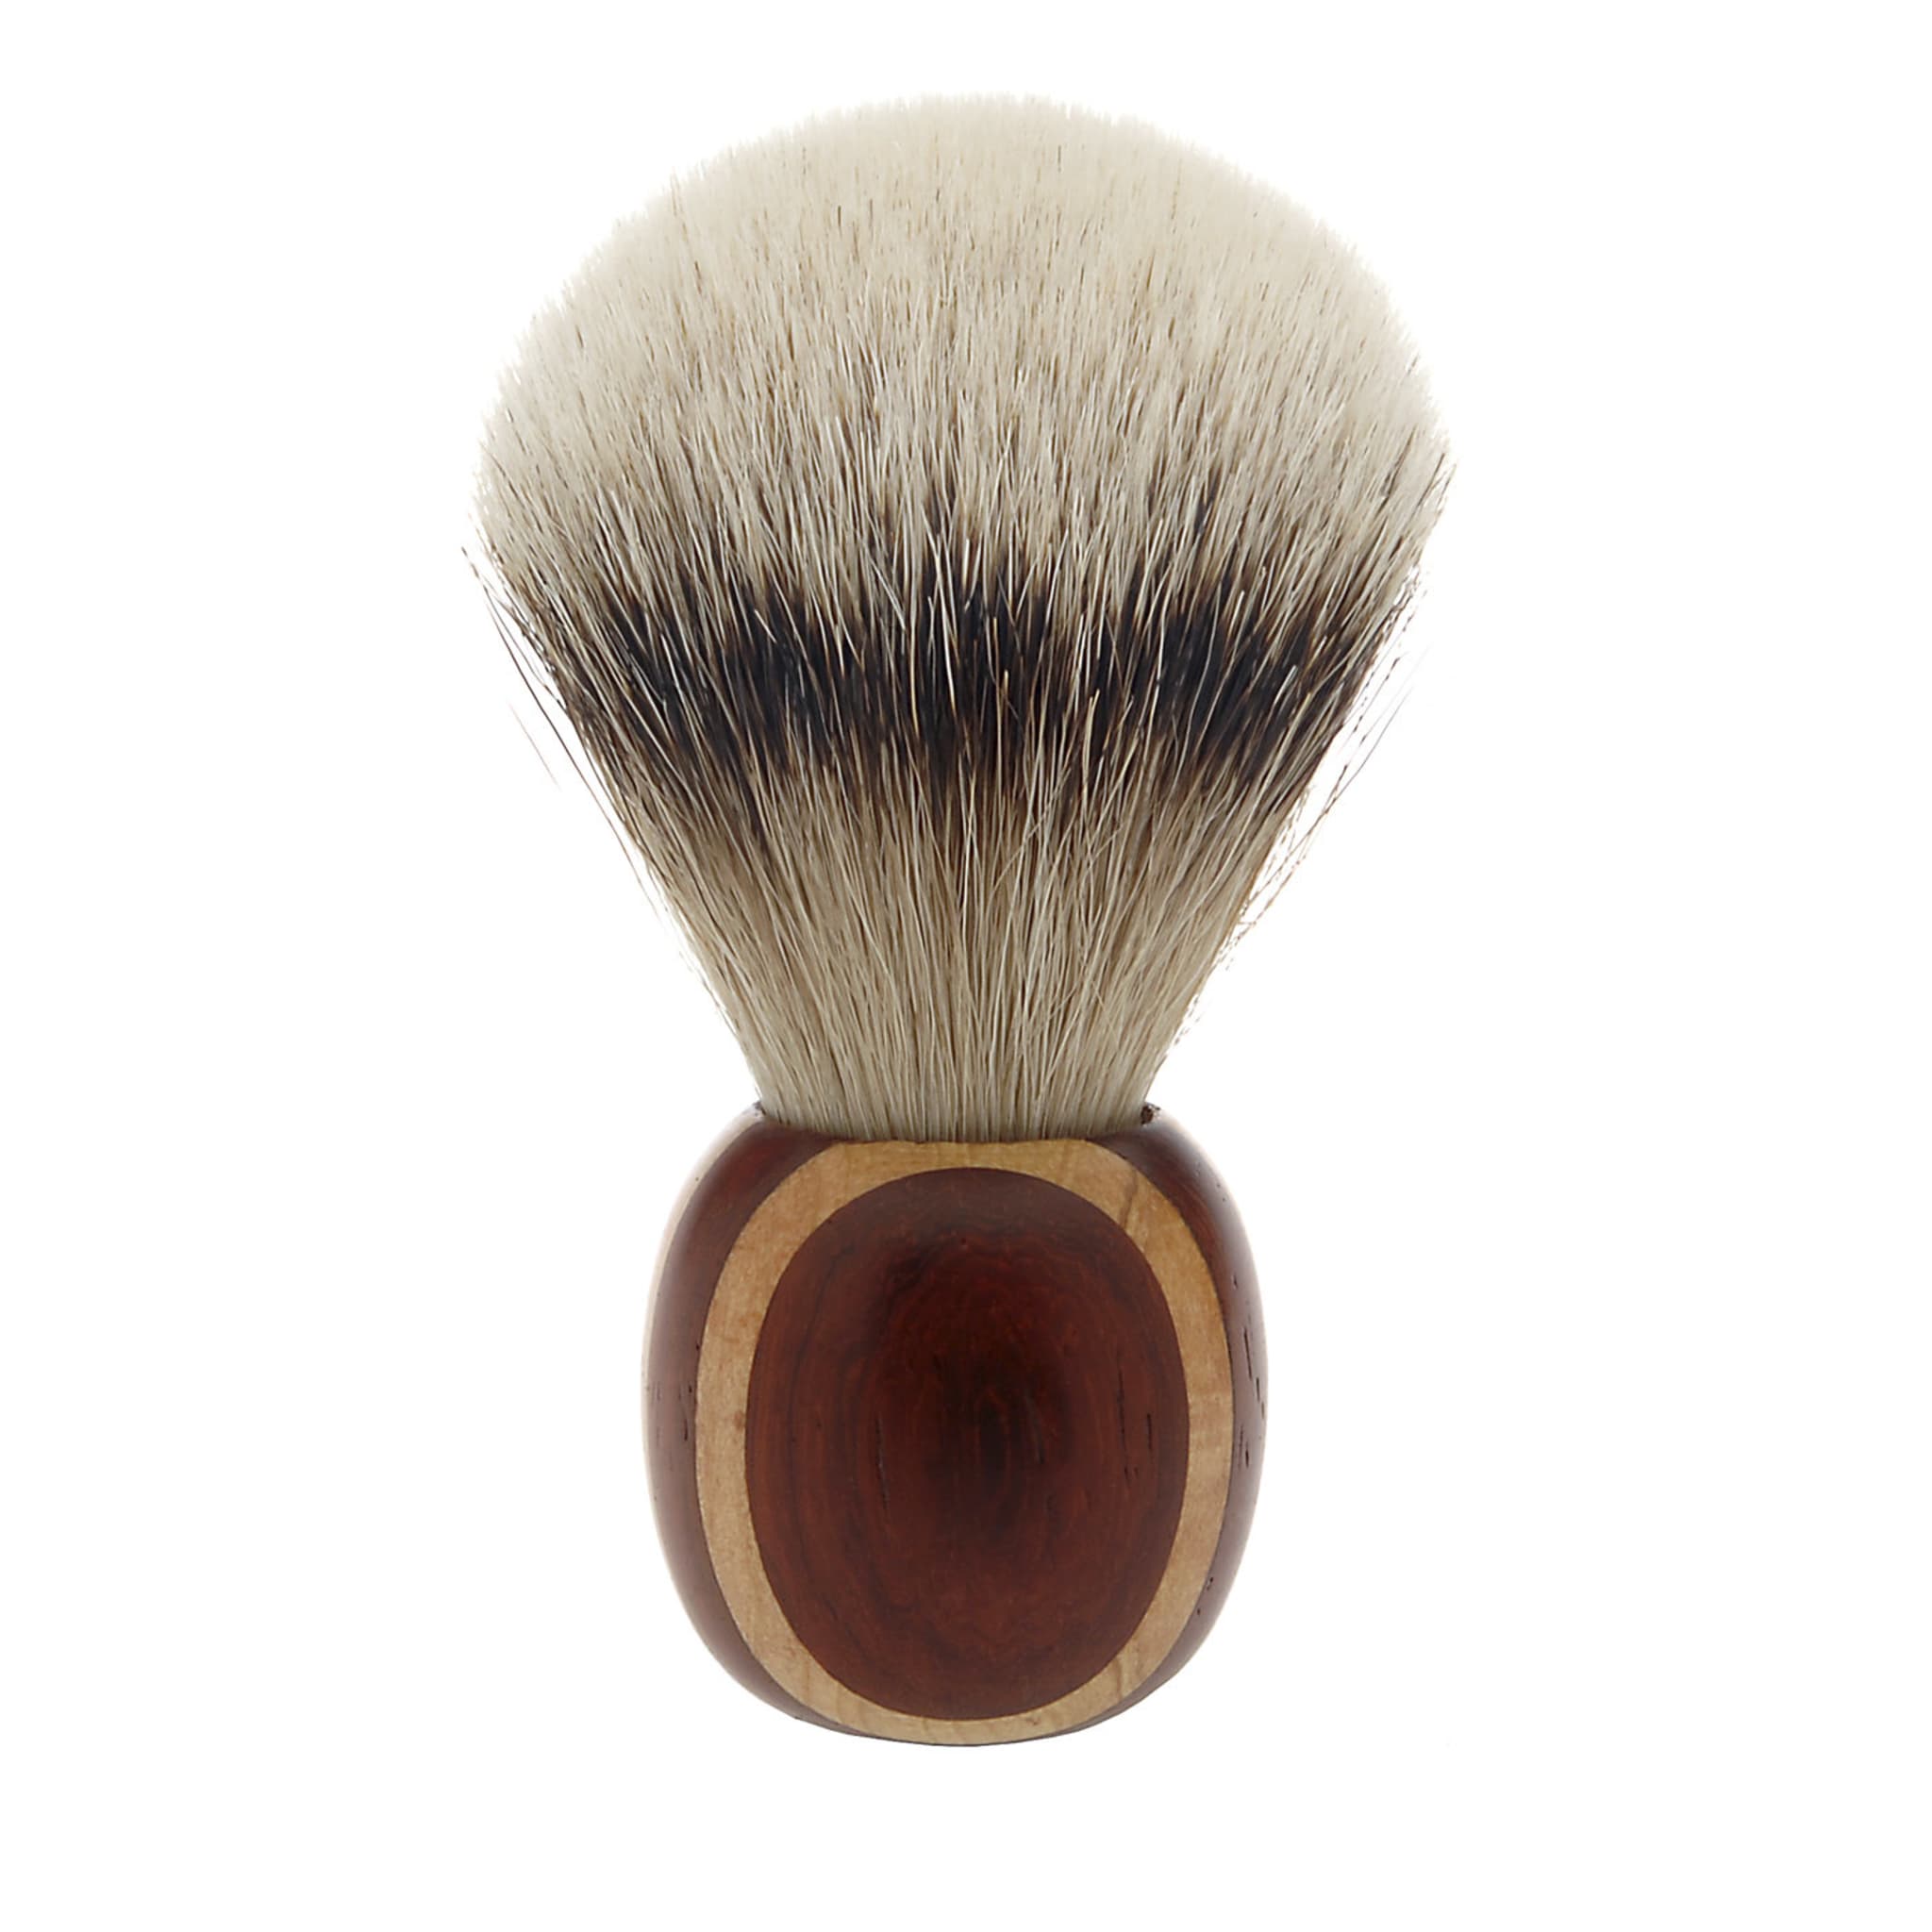 Short Shaving Brush in Maple and Padauk Wood - Main view